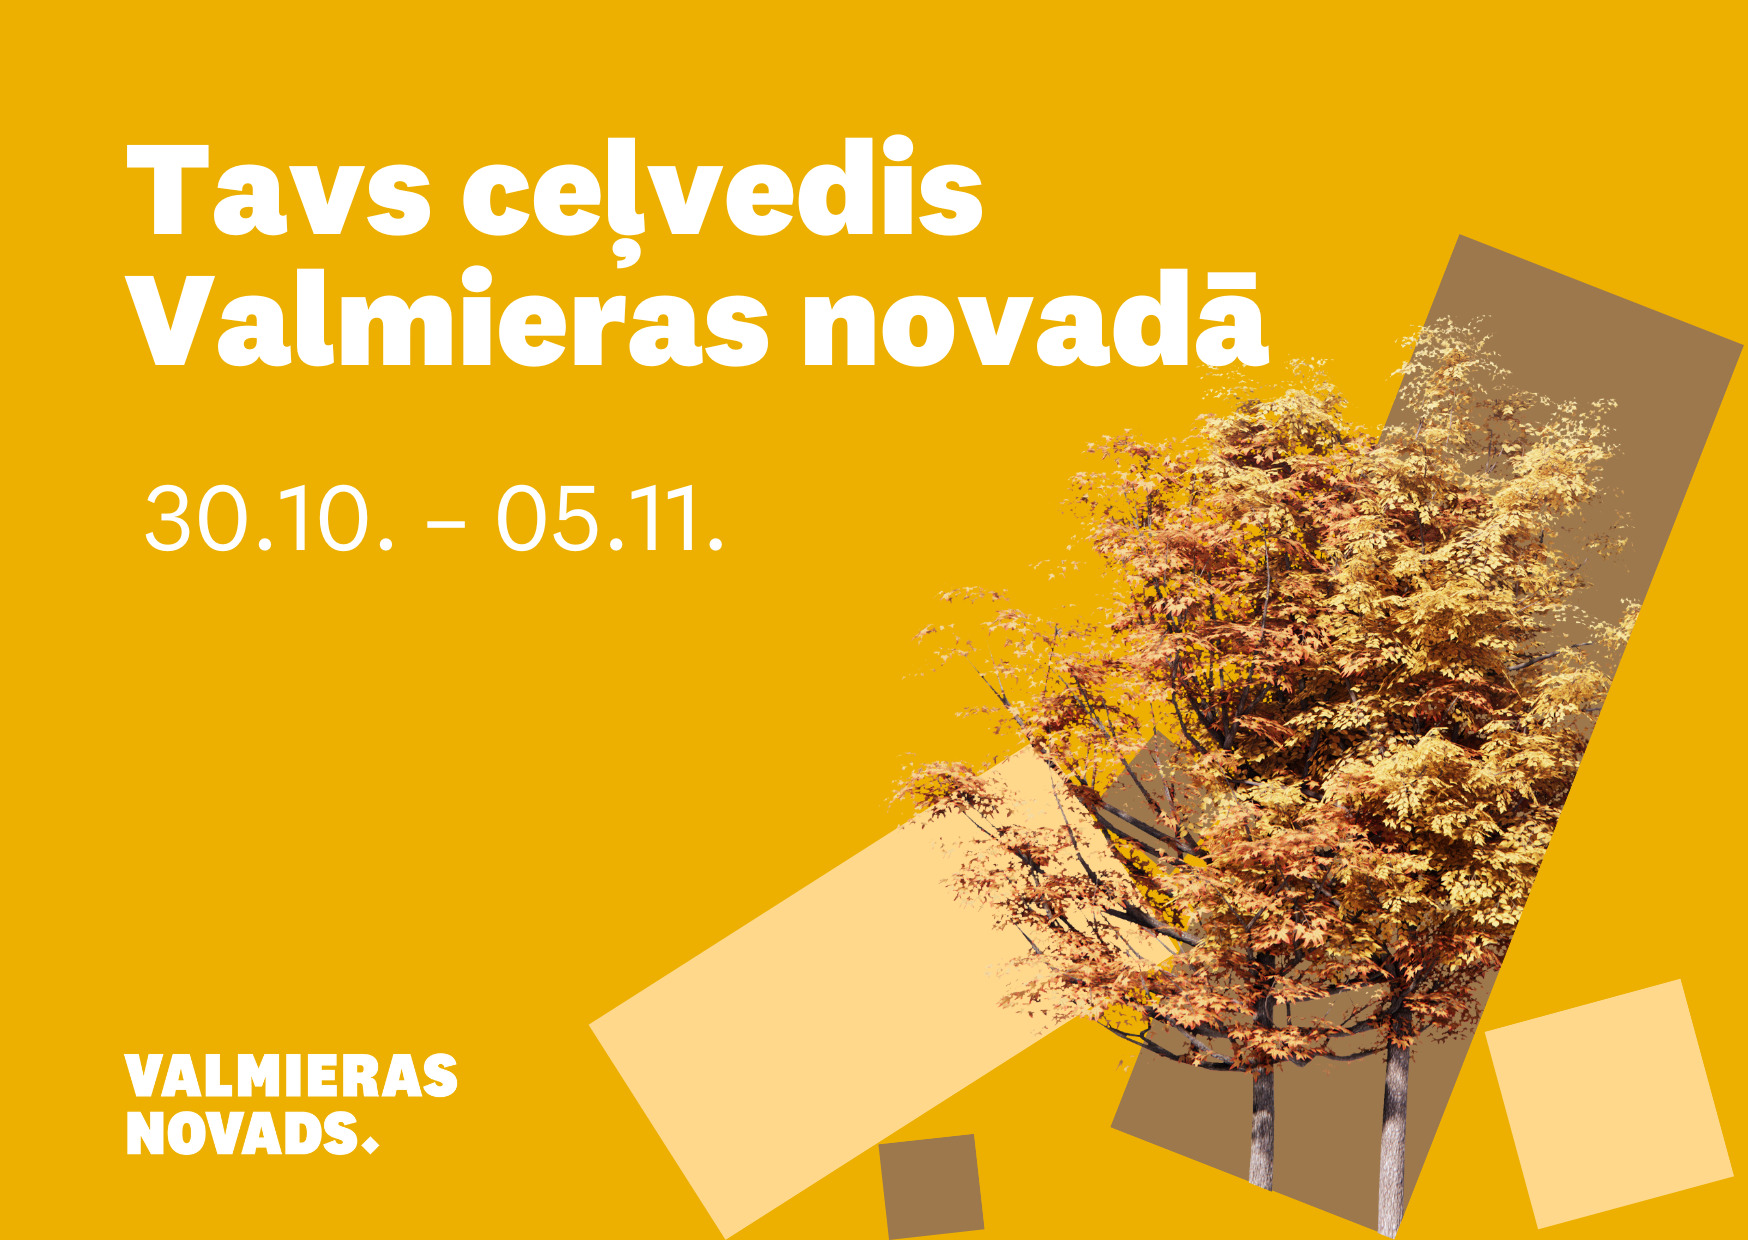 Ar Valmieras novada aktualitātēm no 30. oktobra līdz 5. novembrim vari iepazīties ŠEIT.